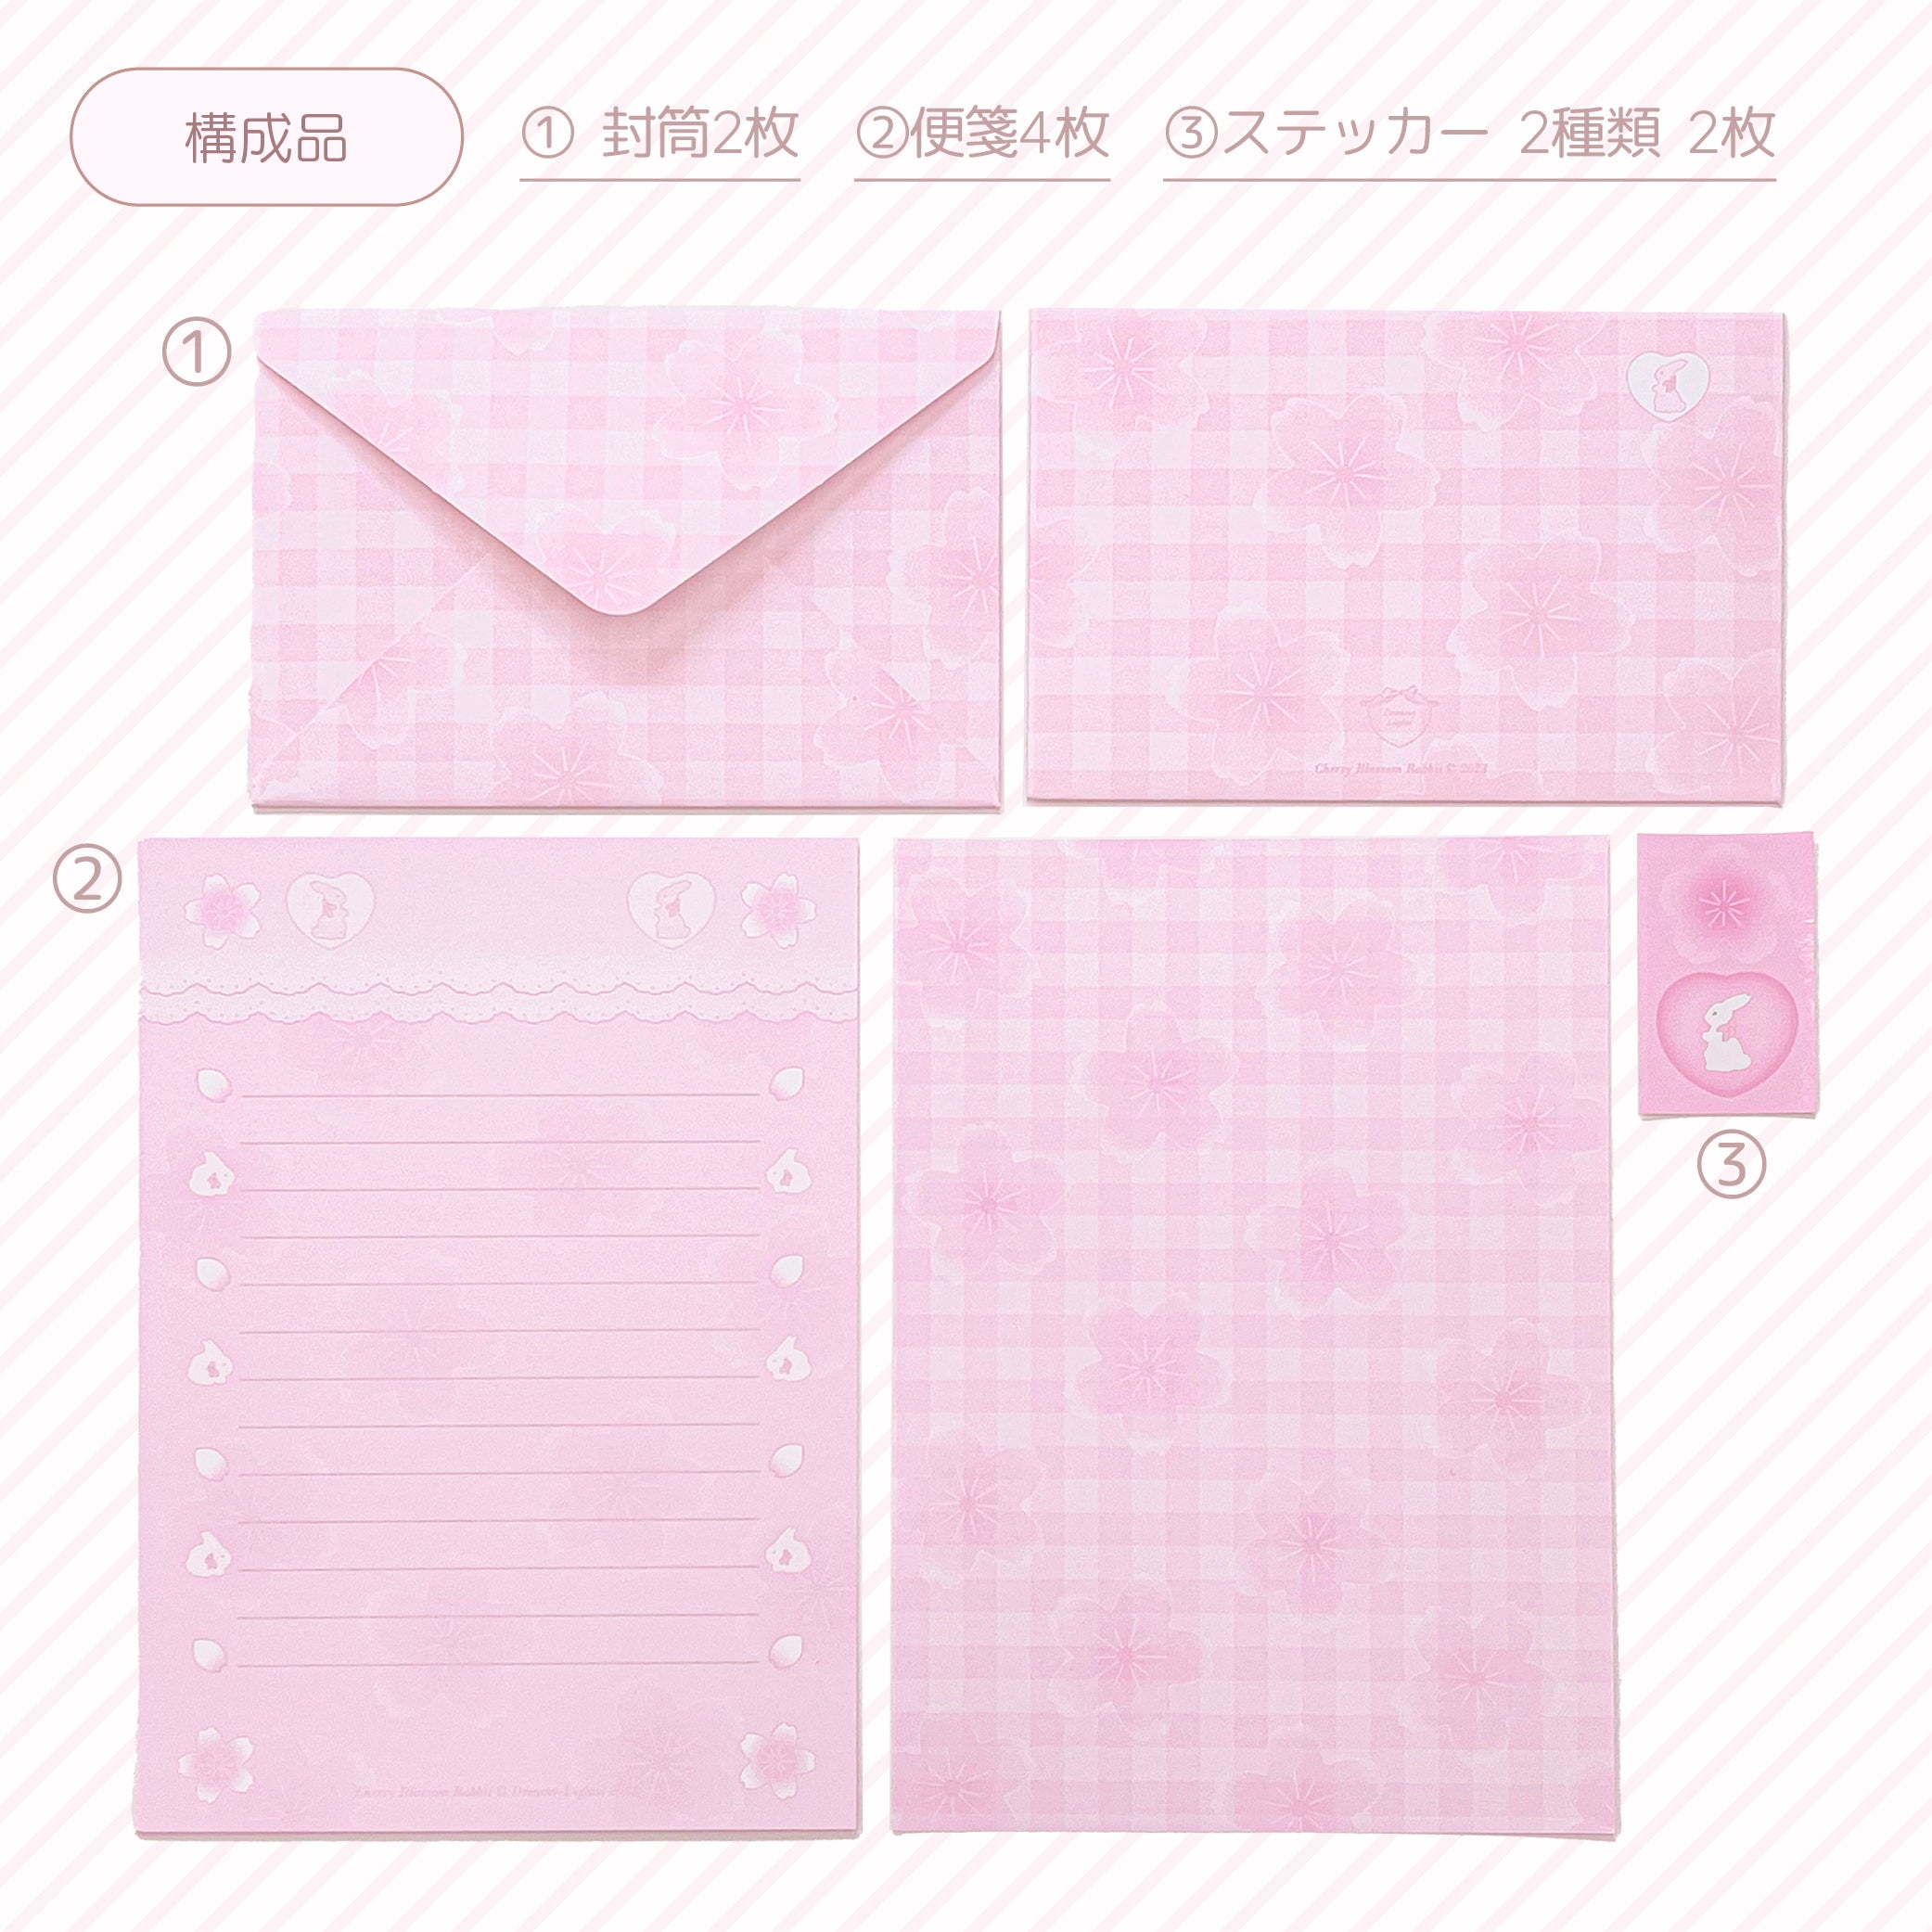 Cherry blossom rabbit ♡ letter set